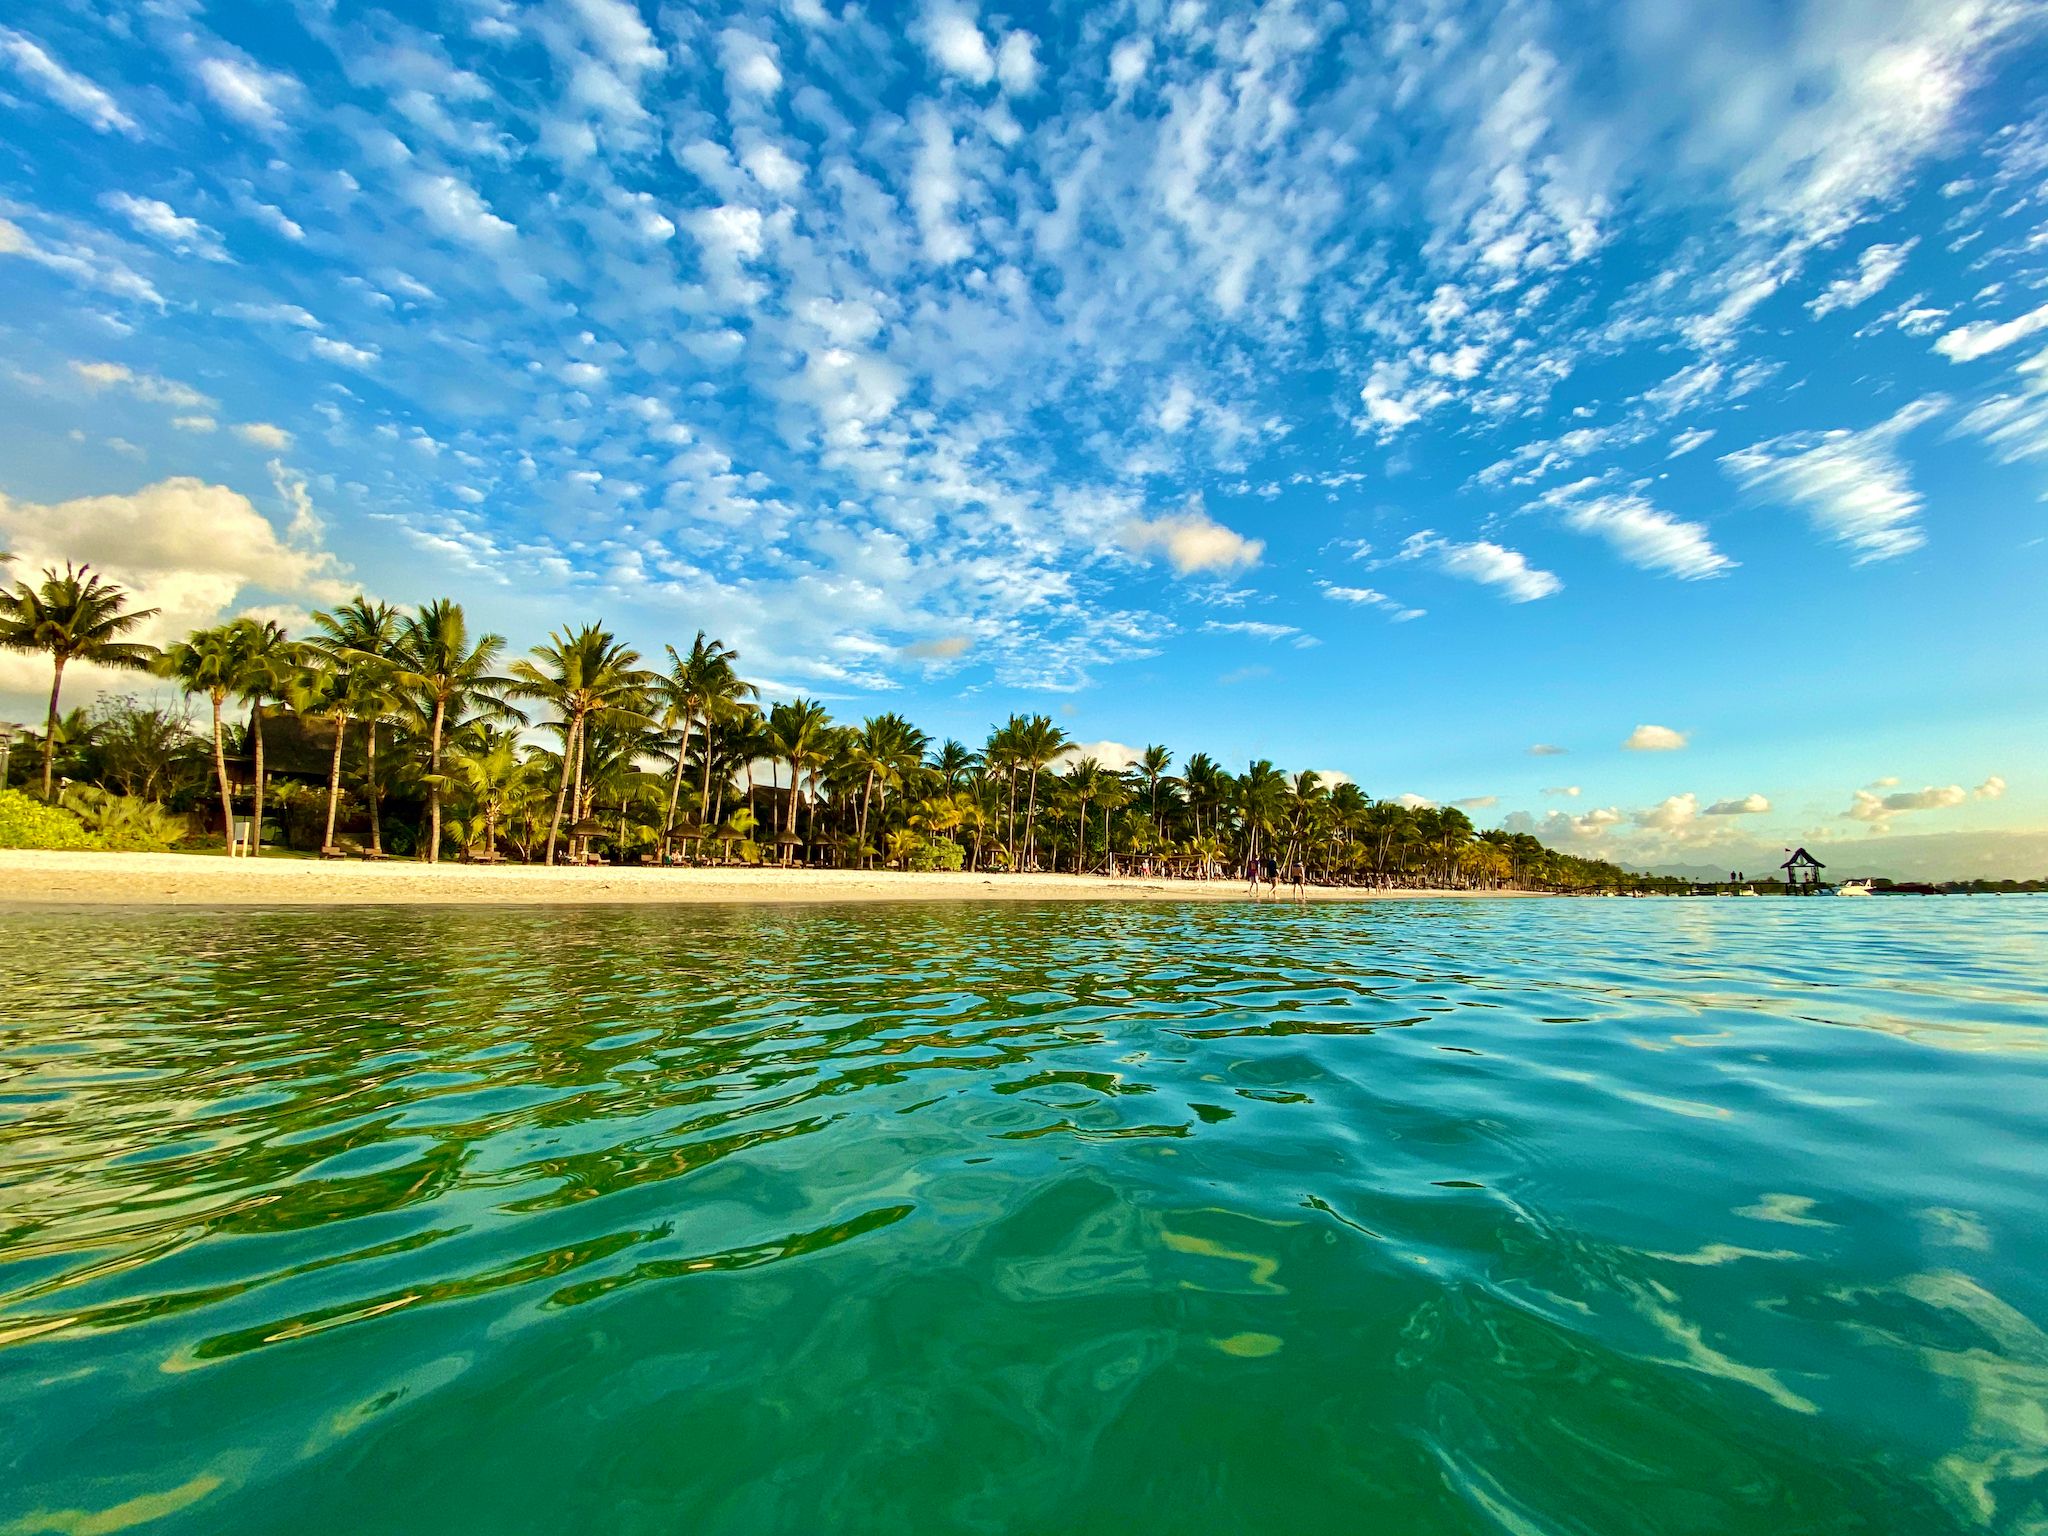 Reisebericht Mauritius Tipps Sehenswürdigkeiten Freizeitaktivitäten Insider Tipps Urlaub ReisenIMG 6077 Reisebericht Mauritius: Tipps & Erfahrungen – Urlaub im Paradies?